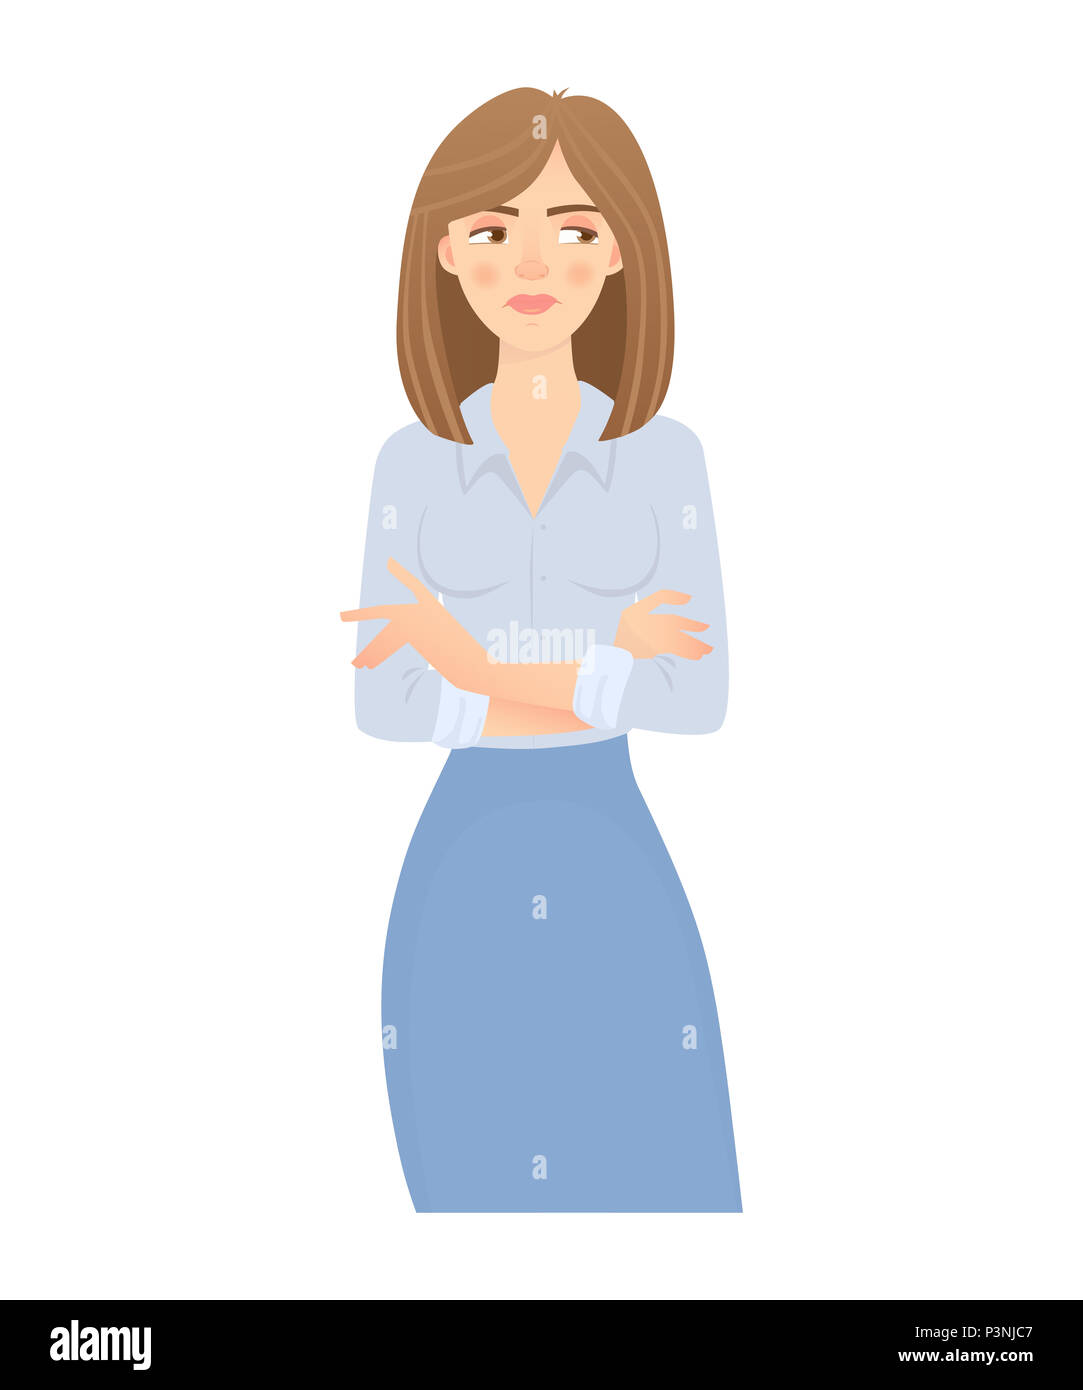 Femme d'affaires isolées. Pose d'affaires et de geste. Young businesswoman illustration. Bras croisés Banque D'Images